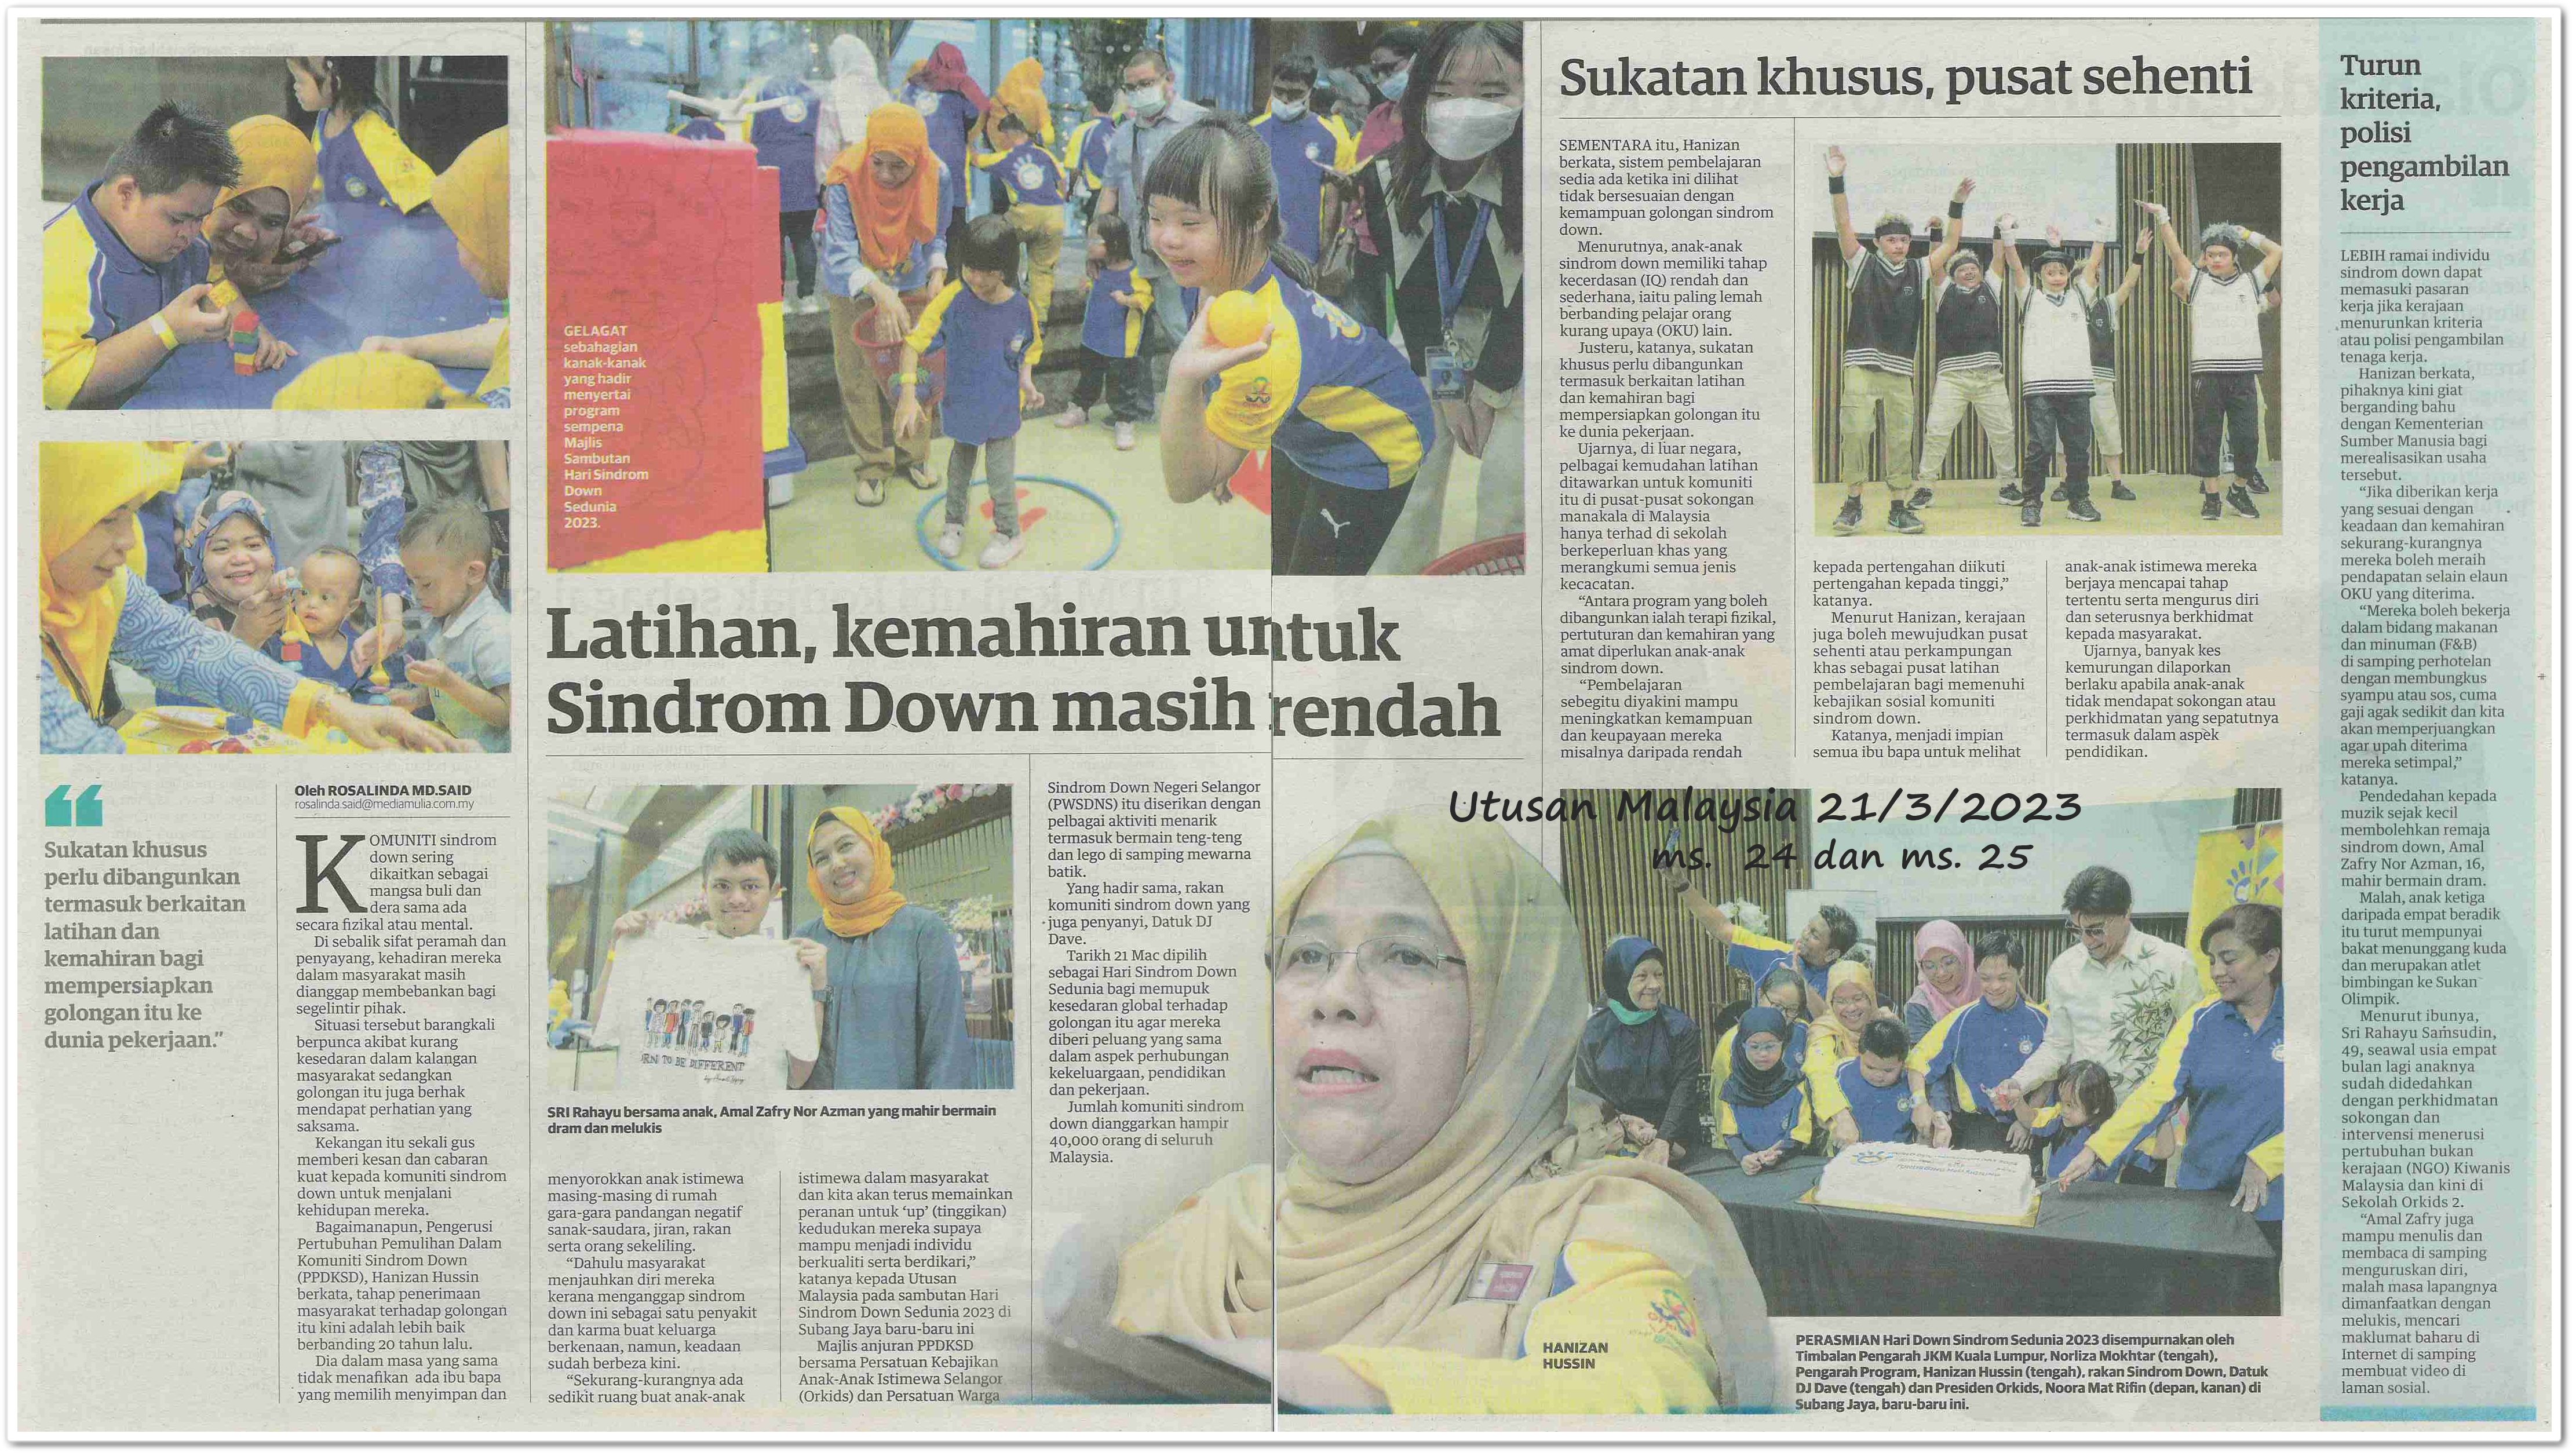 Tiada pendidikan khusus untuk anak-anak Sindrom Down - Keratan akhbar Utusan Malaysia 21 Mac 2023